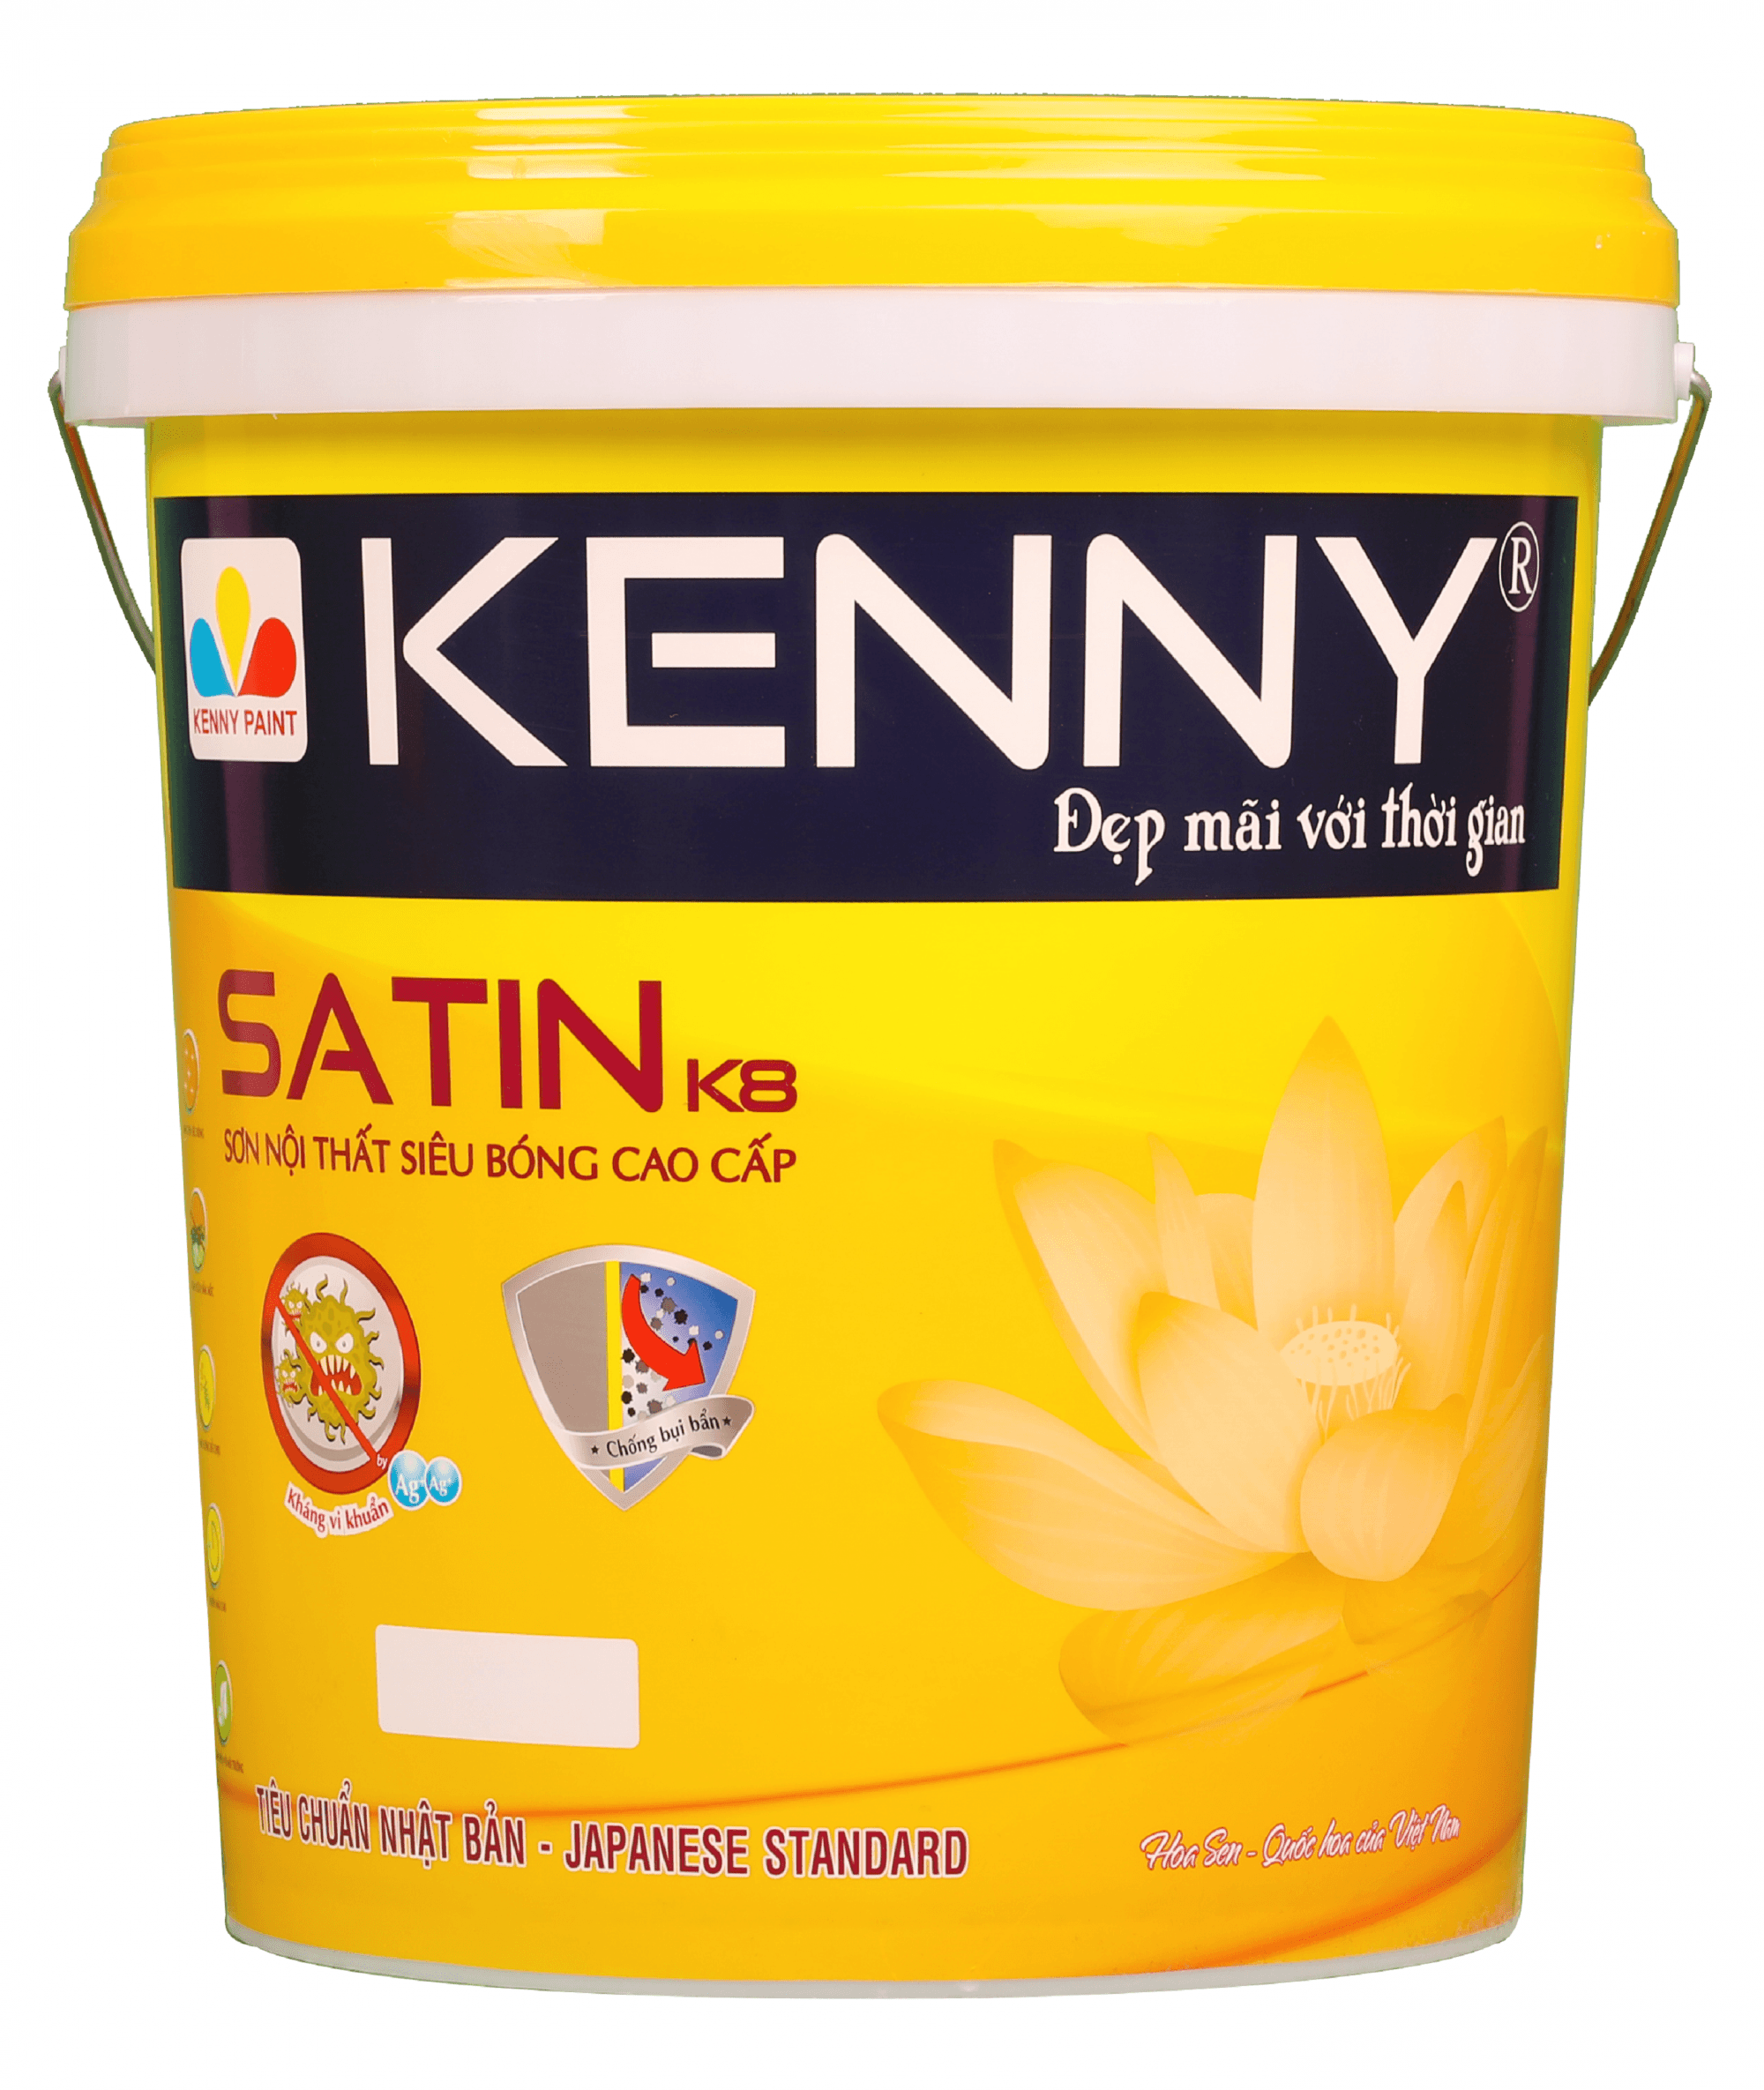 Kenny Satin K8: Hãy chiêm ngưỡng hình ảnh đẹp như mơ của Kenny Satin K8 để cảm nhận lớp sơn bóng siêu trơn, mịn màng, giúp bảo vệ và tăng thêm tính thẩm mỹ cho xe của bạn.